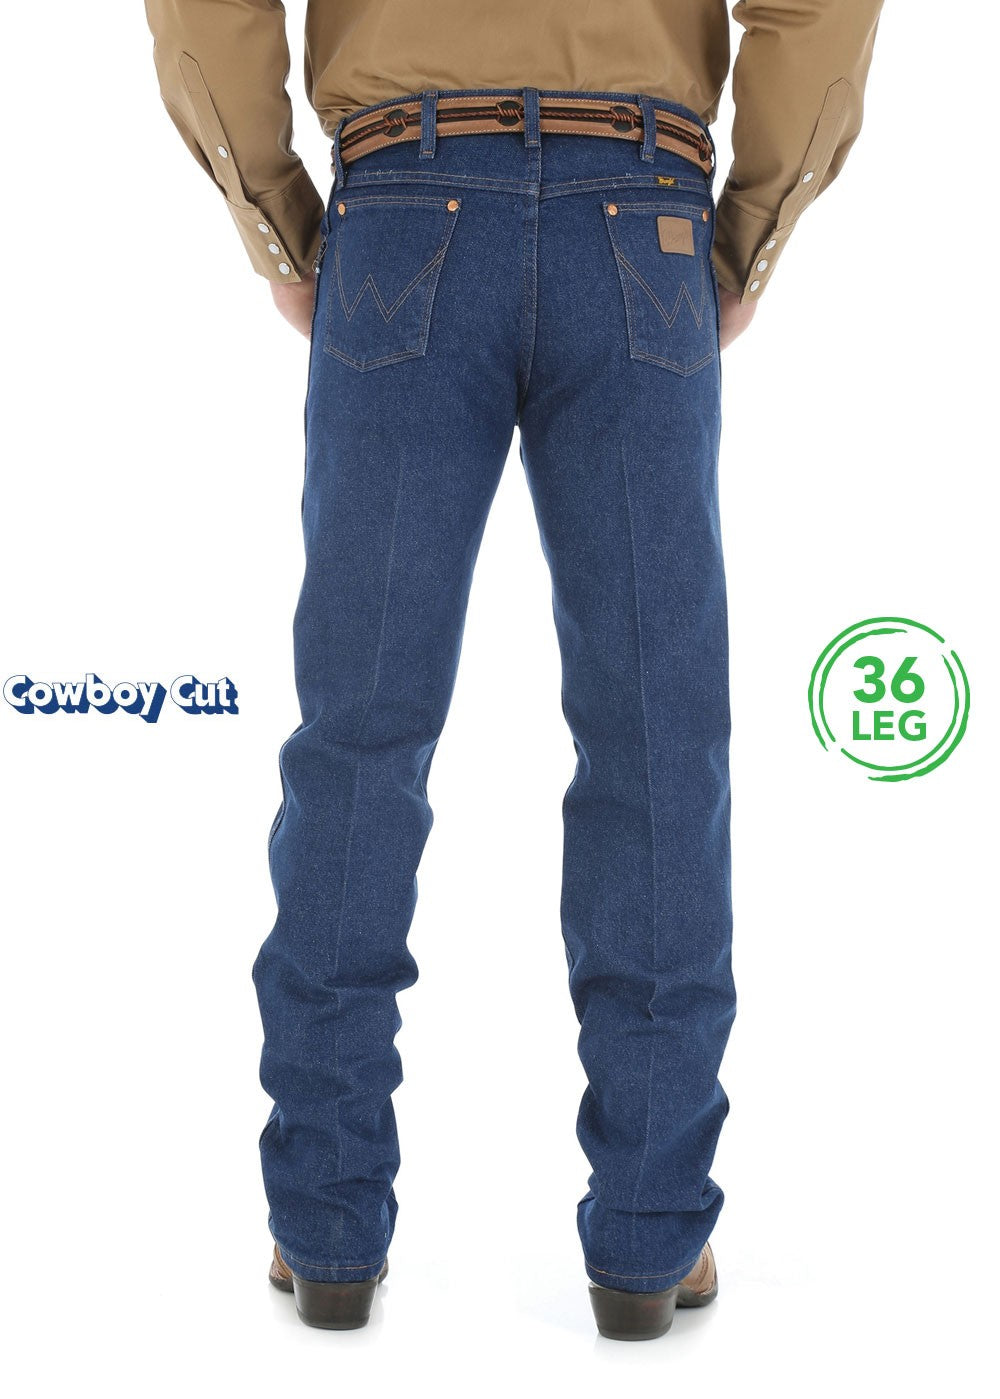 Wrangler | Mens | Jeans | Cowboy Cut | 36" | Original | Prewashed Indigo - BK8 Outfitters Australia